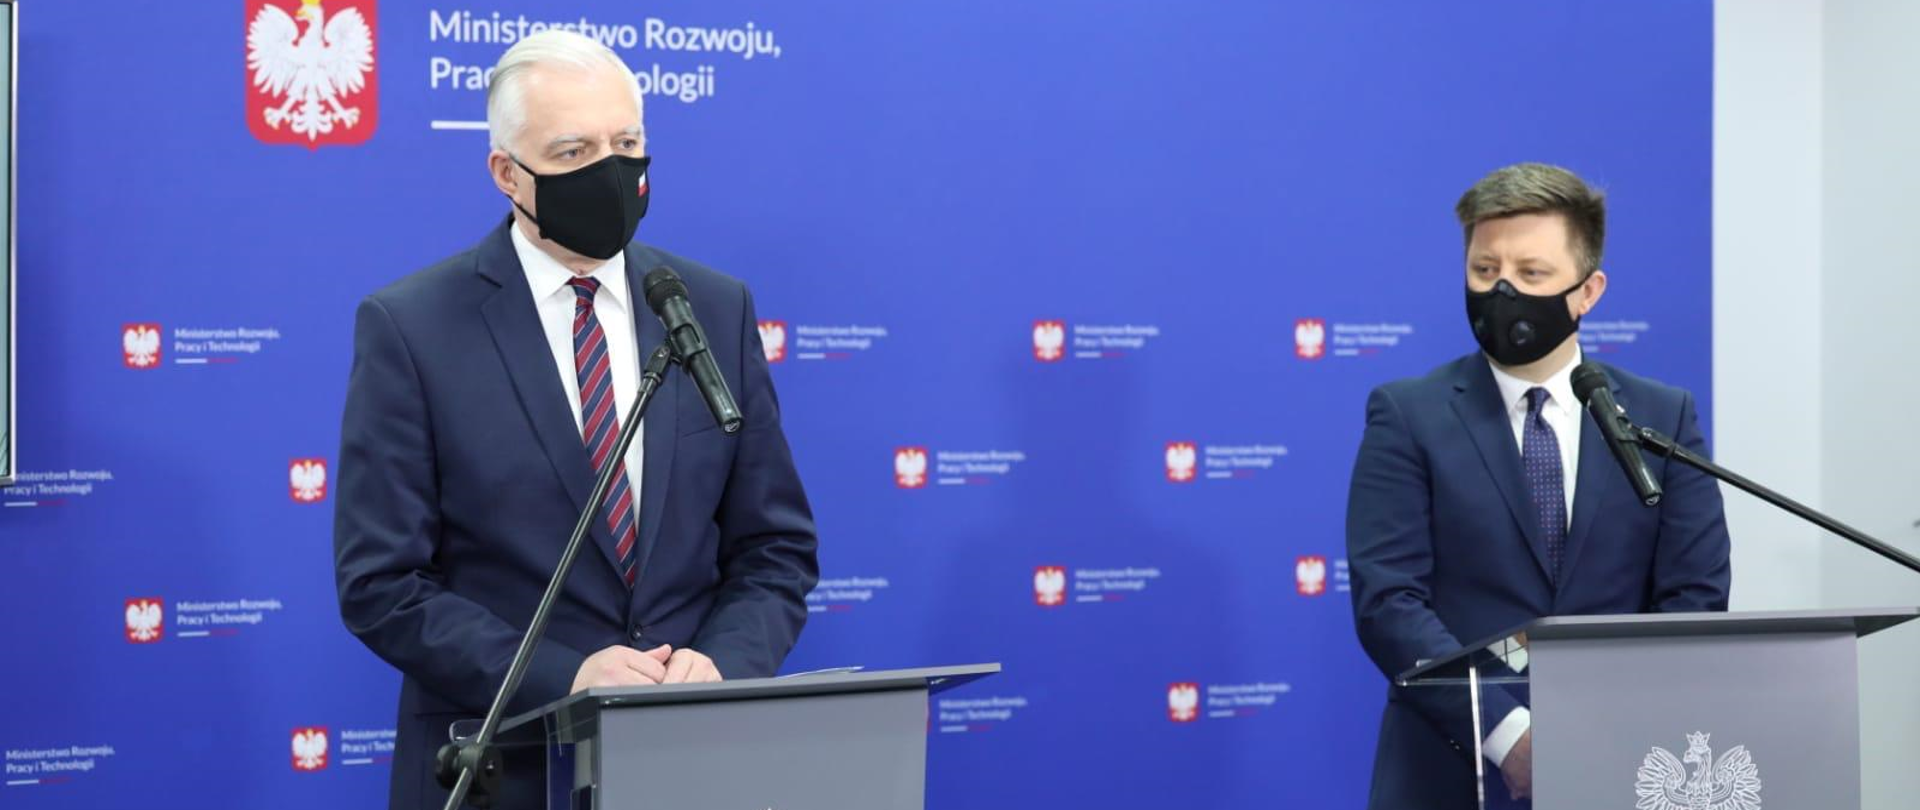 Konferencja prasowa wicepremiera J. Gowina i min. M. Dworczyka na niebieskim tle.